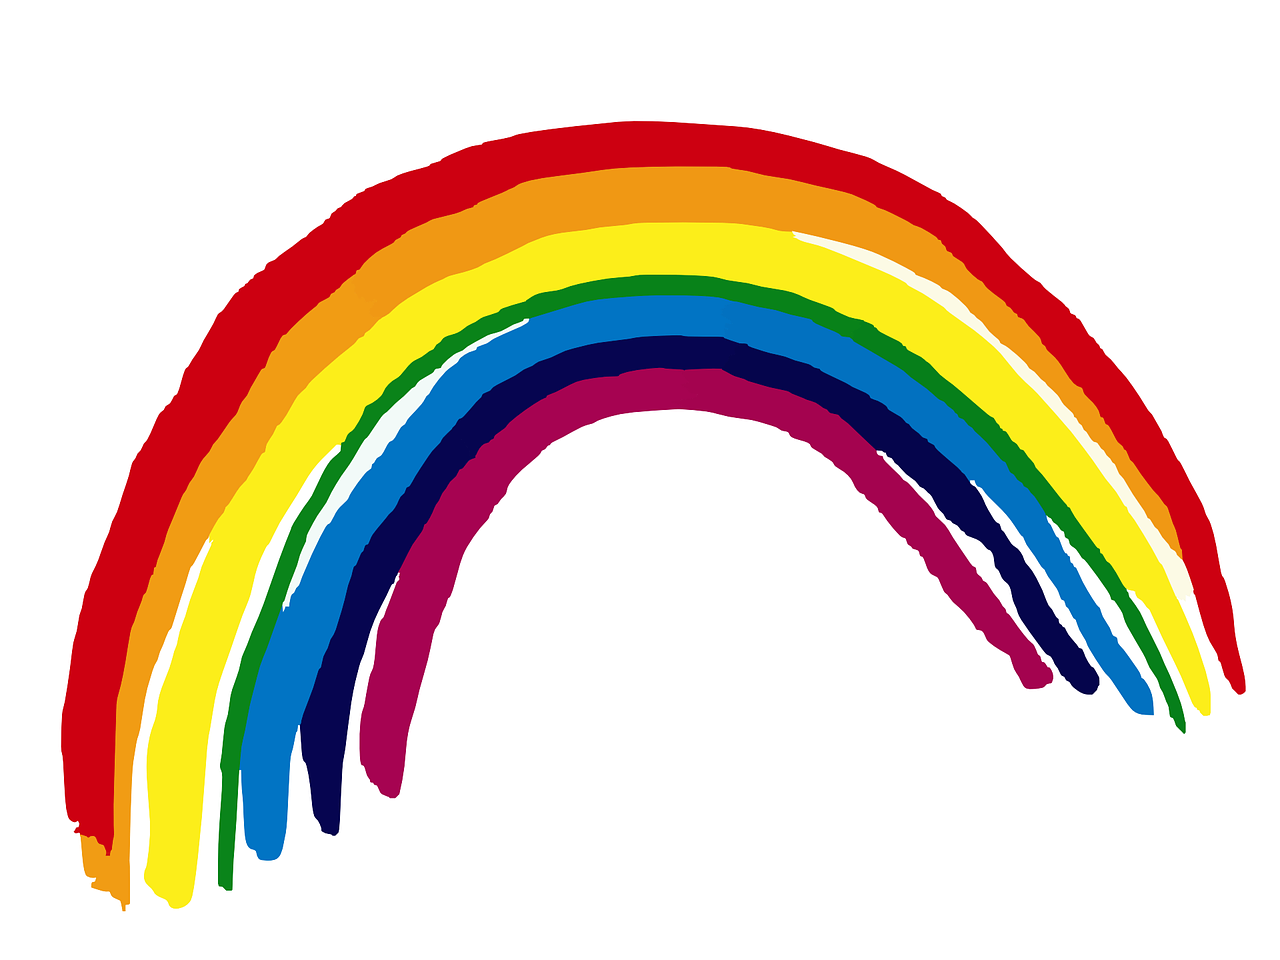 Painted rainbow image.